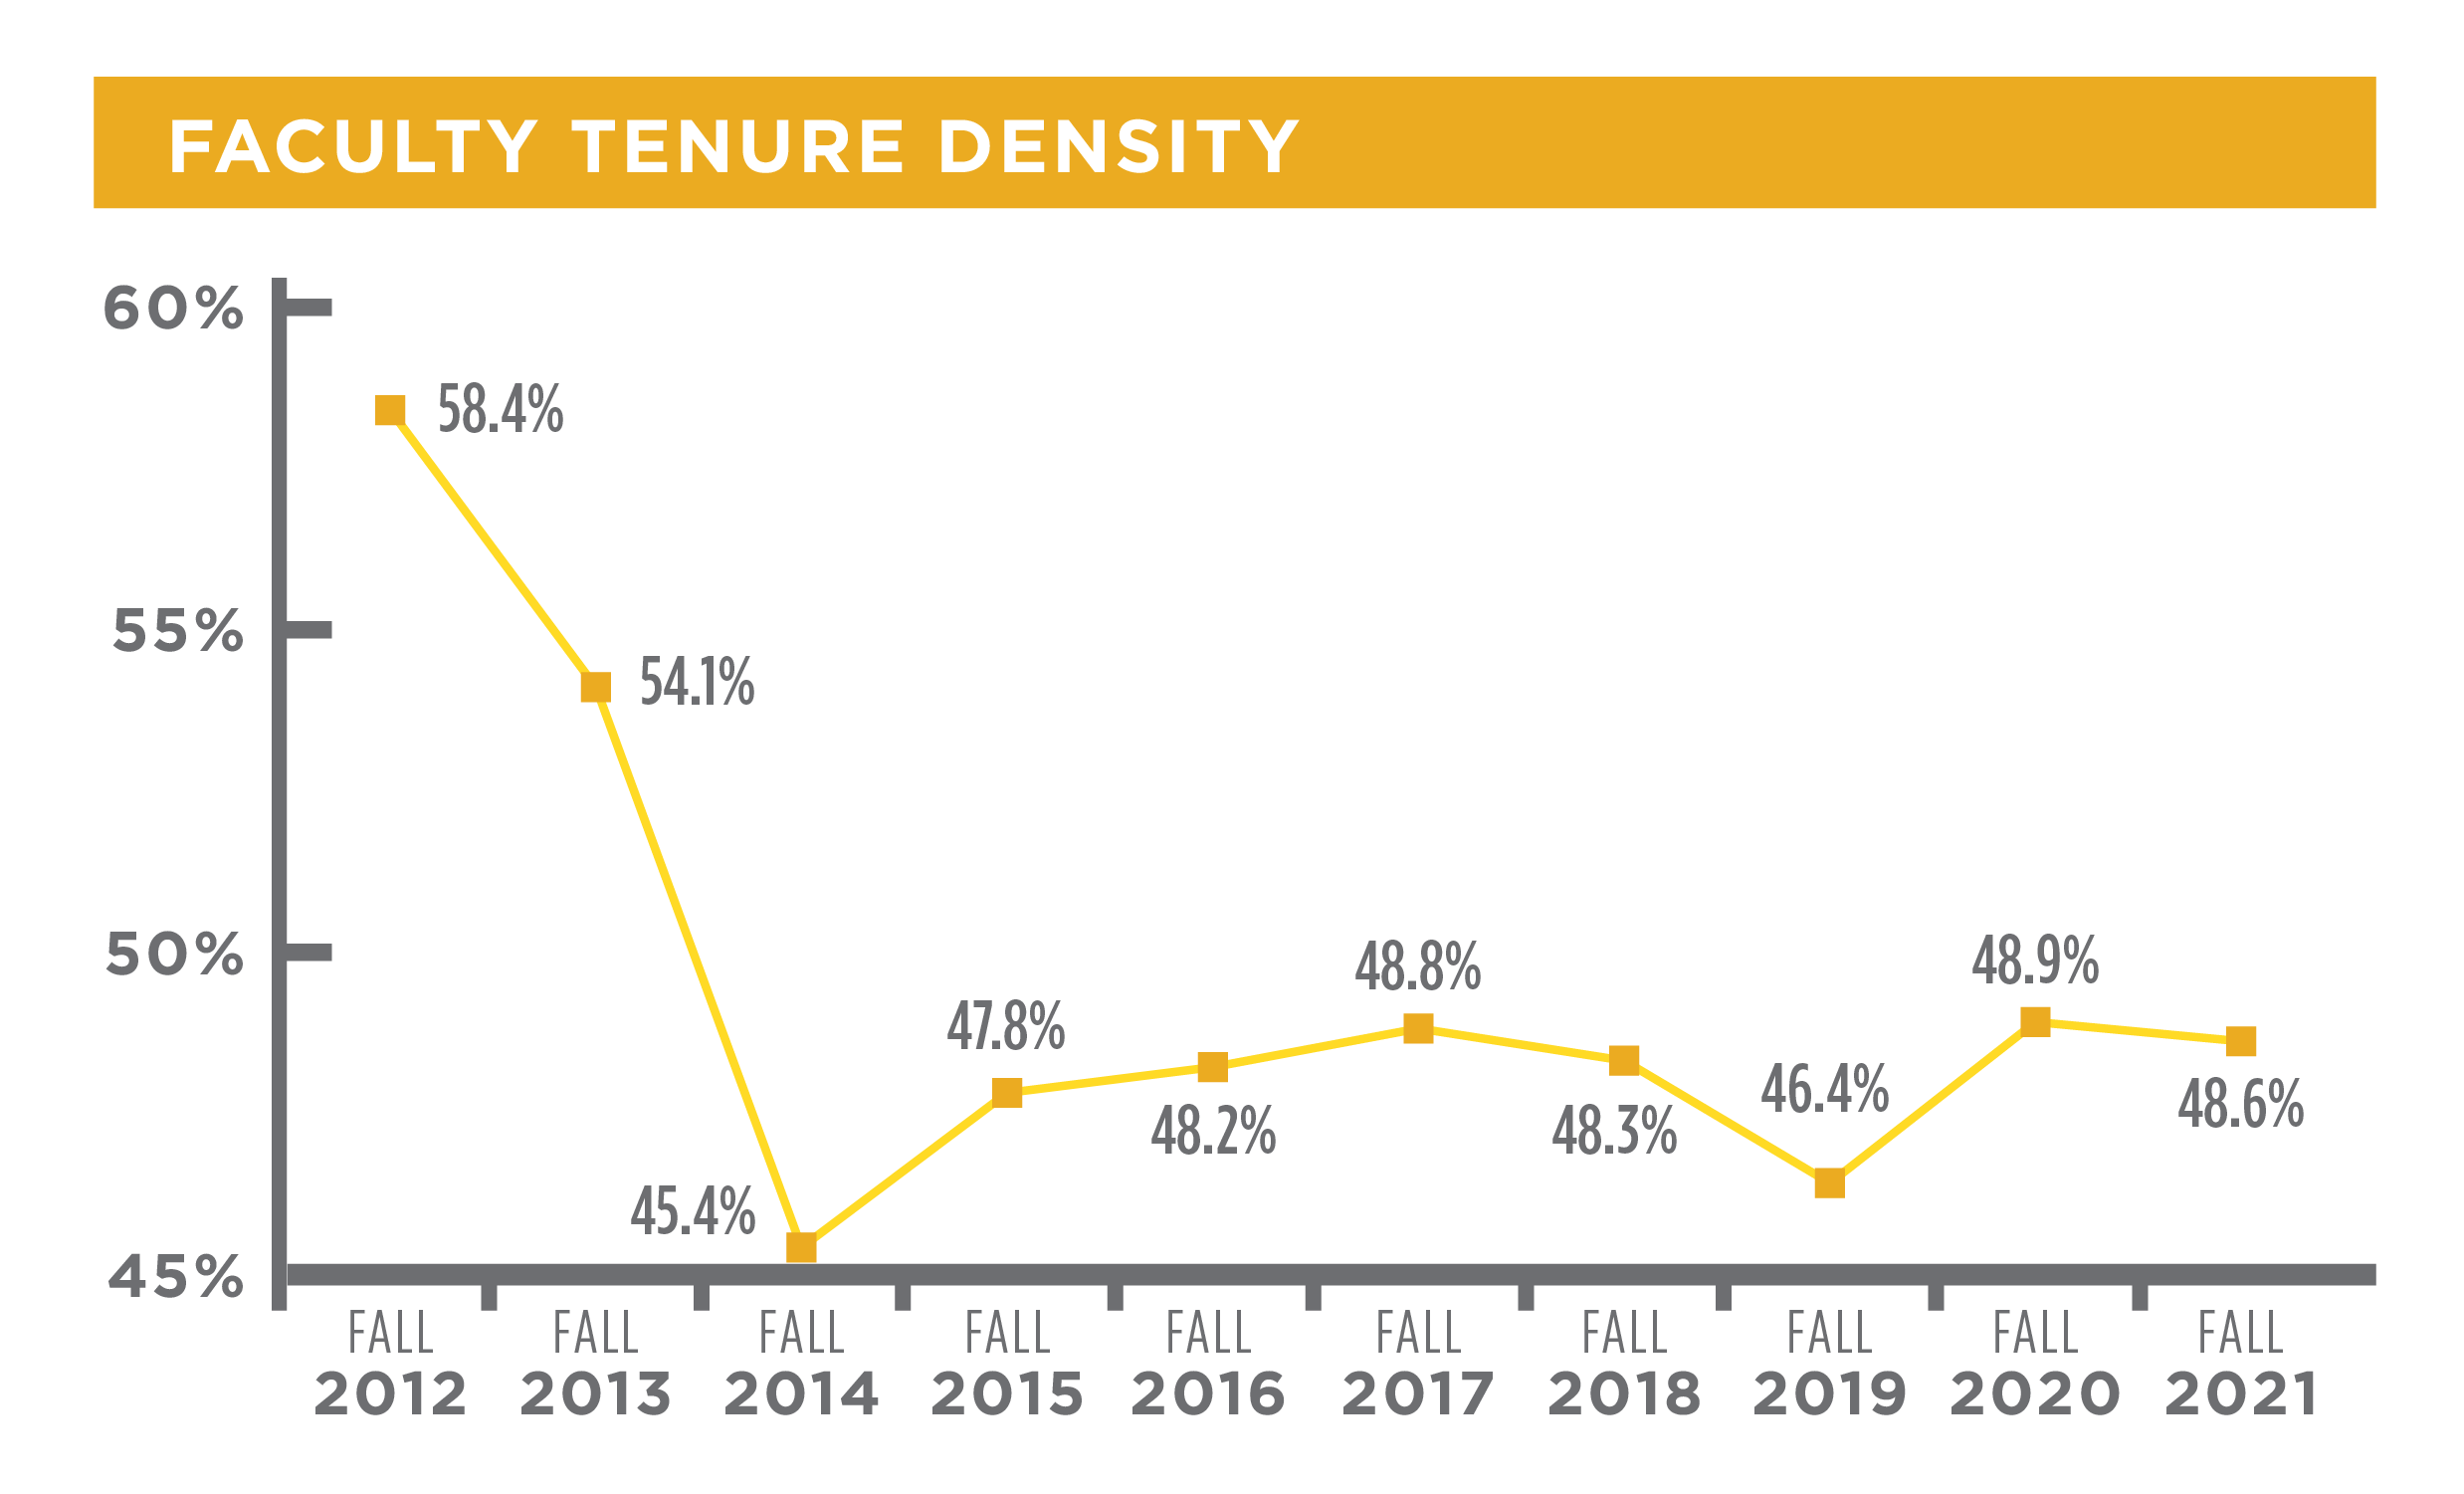 Faculty tenure density